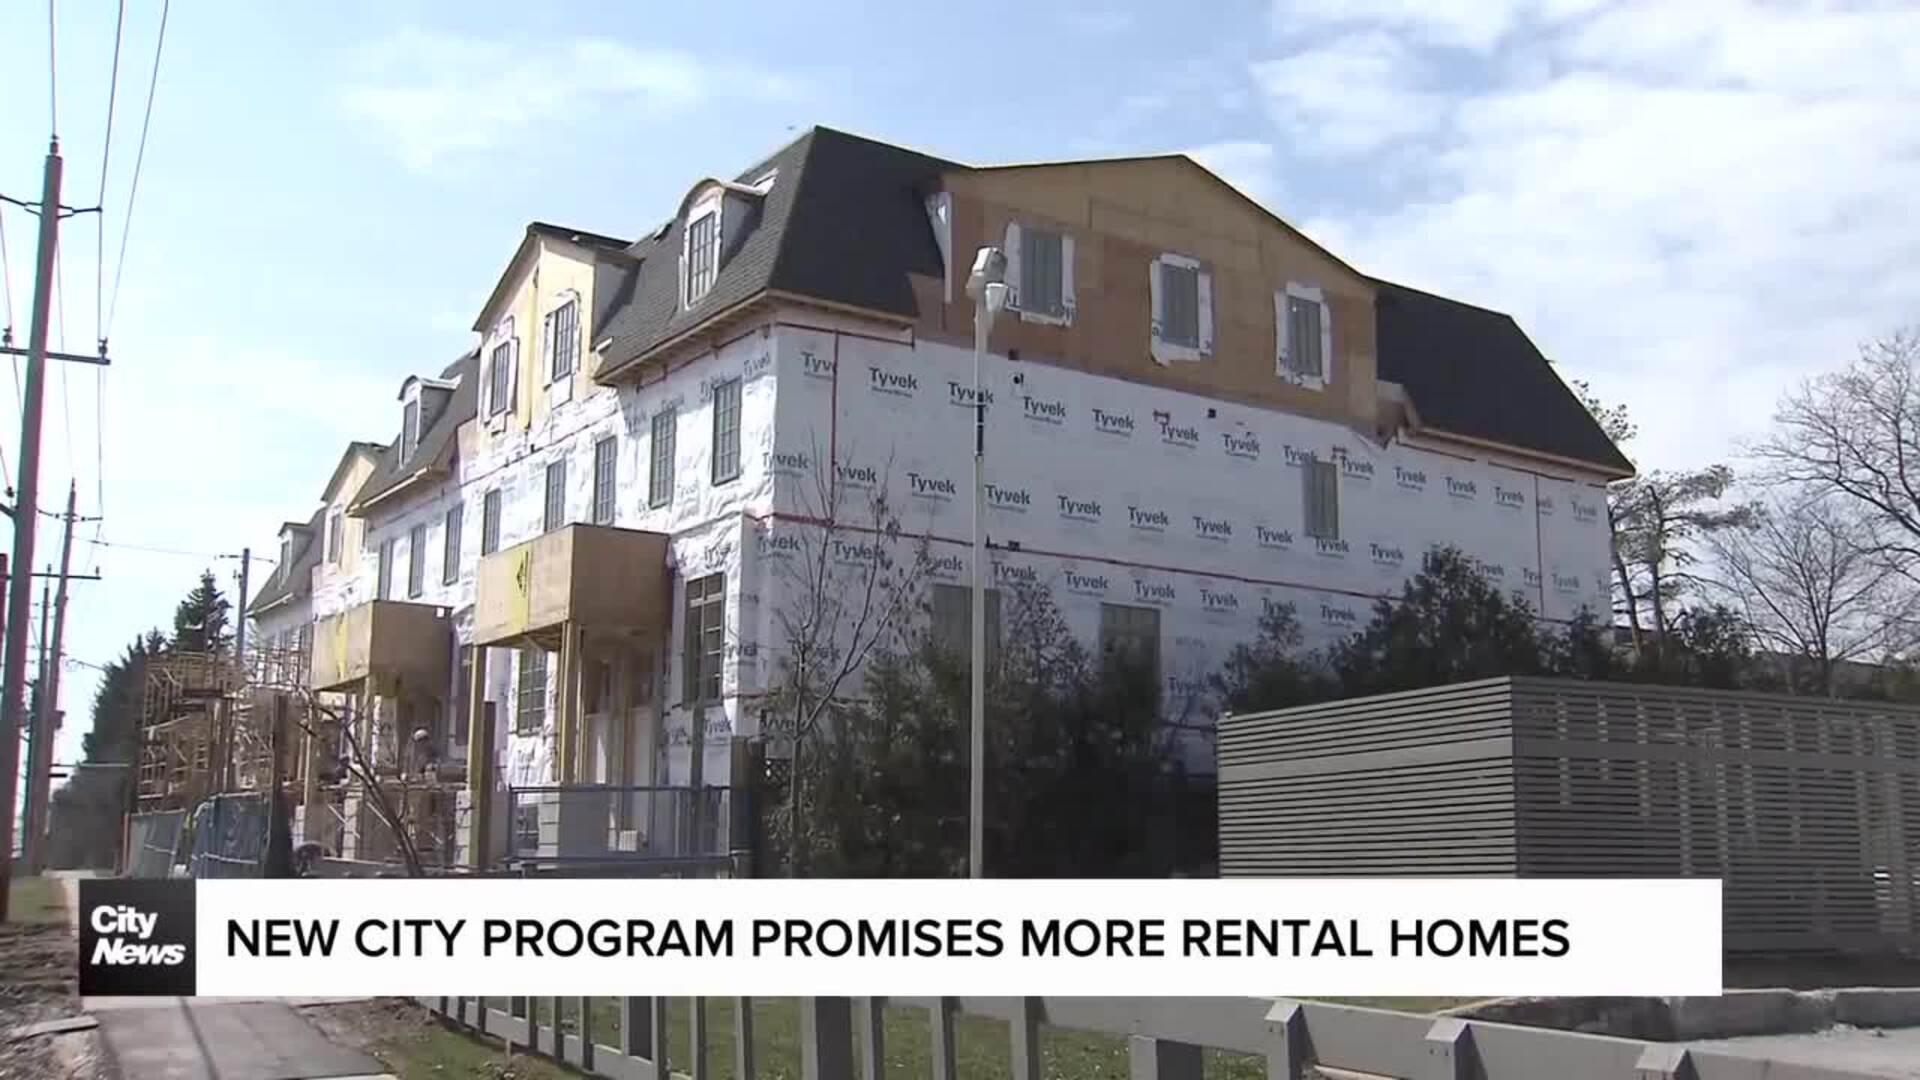 New city program promises faster rental housing supply